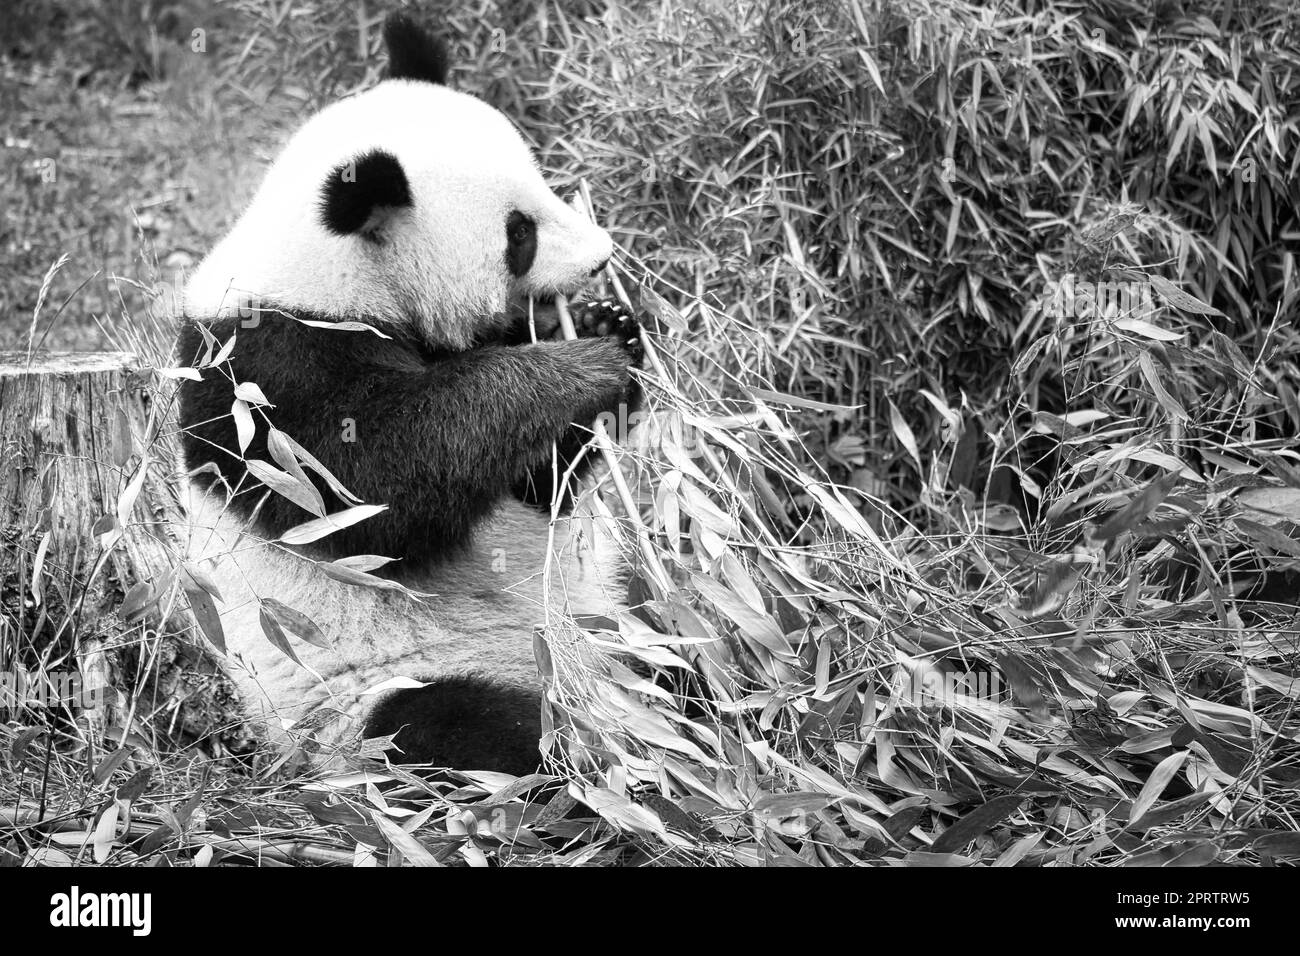 Großer Panda in Schwarz und Weiß, sitzt und isst Bambus. Gefährdete Arten. Stockfoto